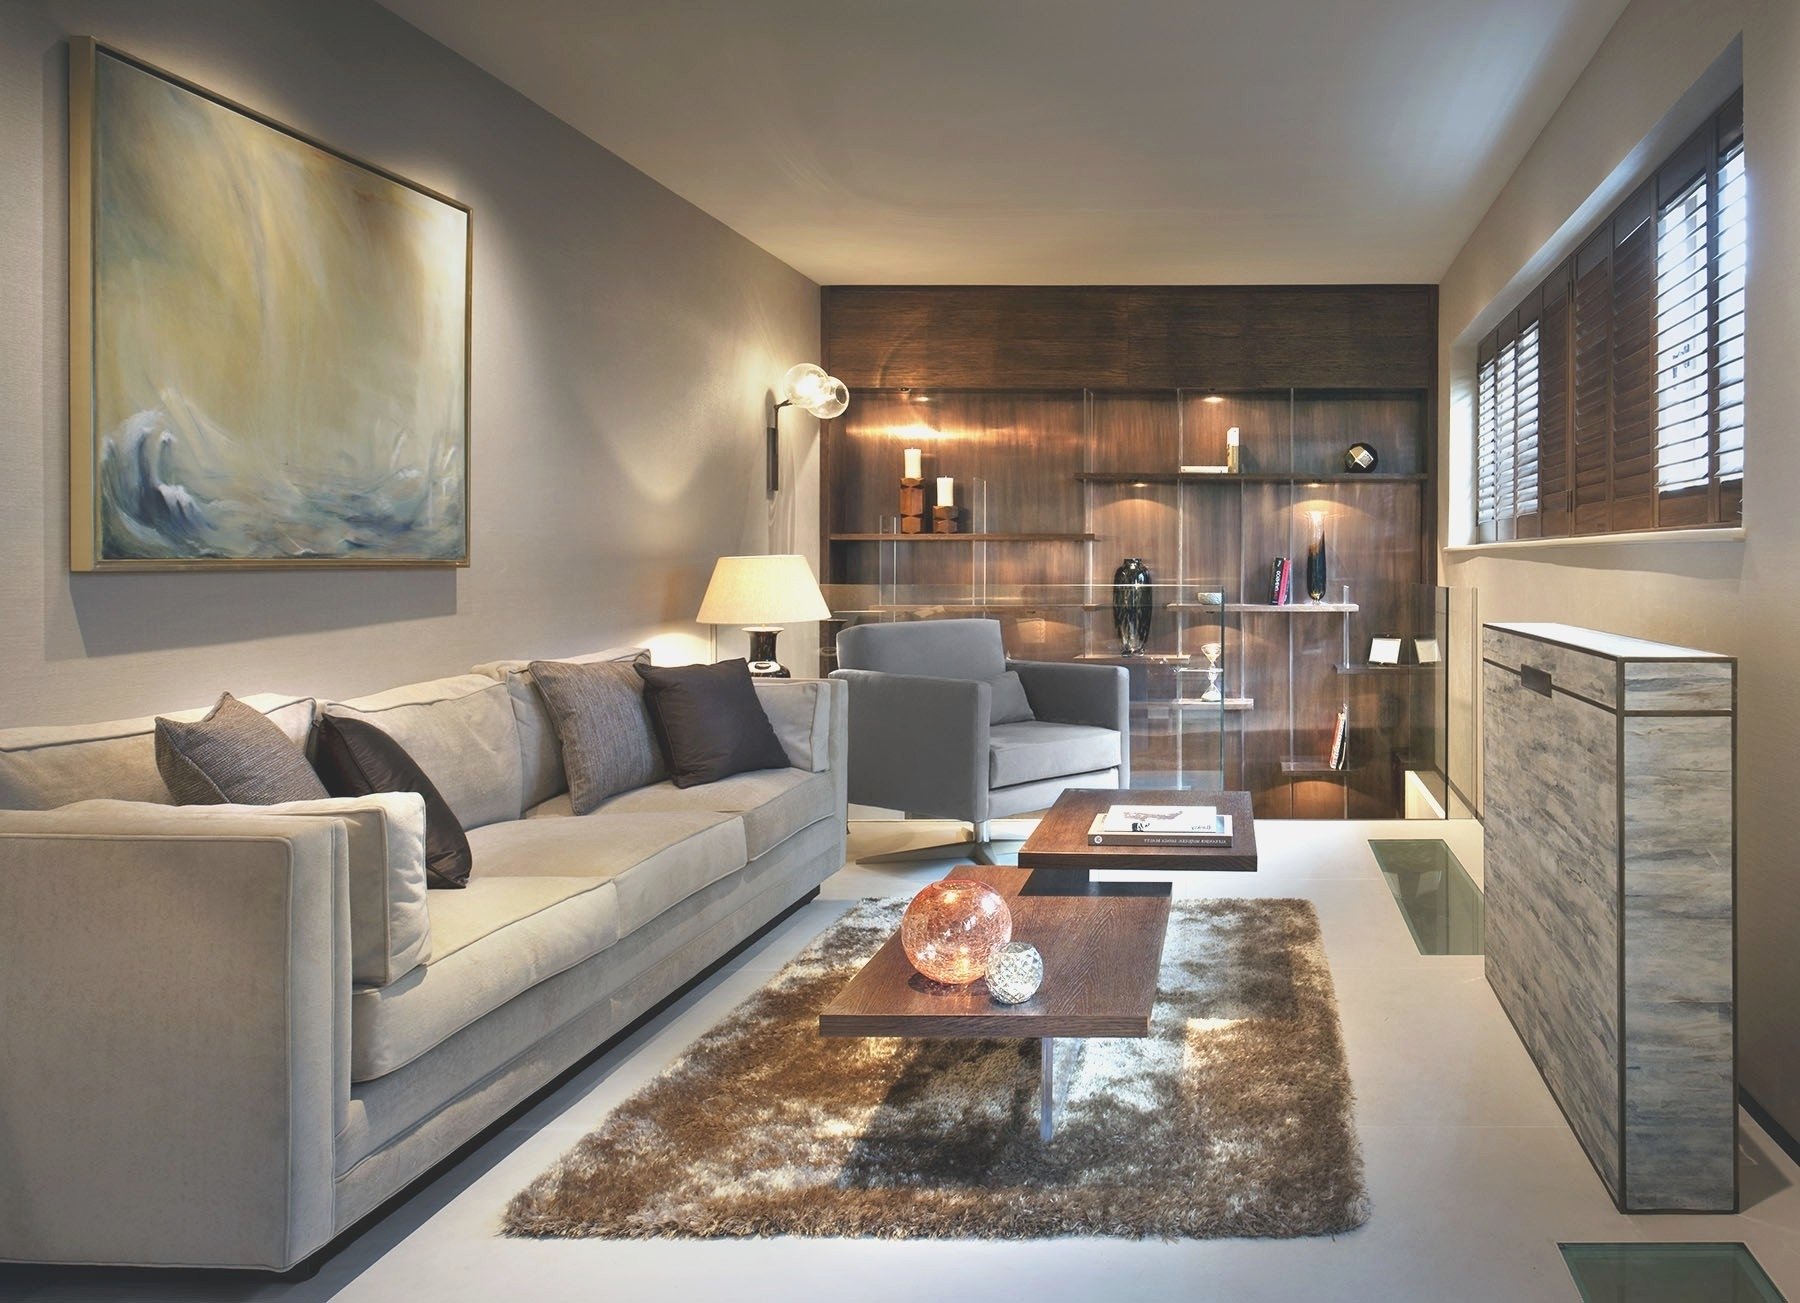 10 Amazing Narrow Living Room Design Ideas living room long narrow living room design ideas inspirational 2022